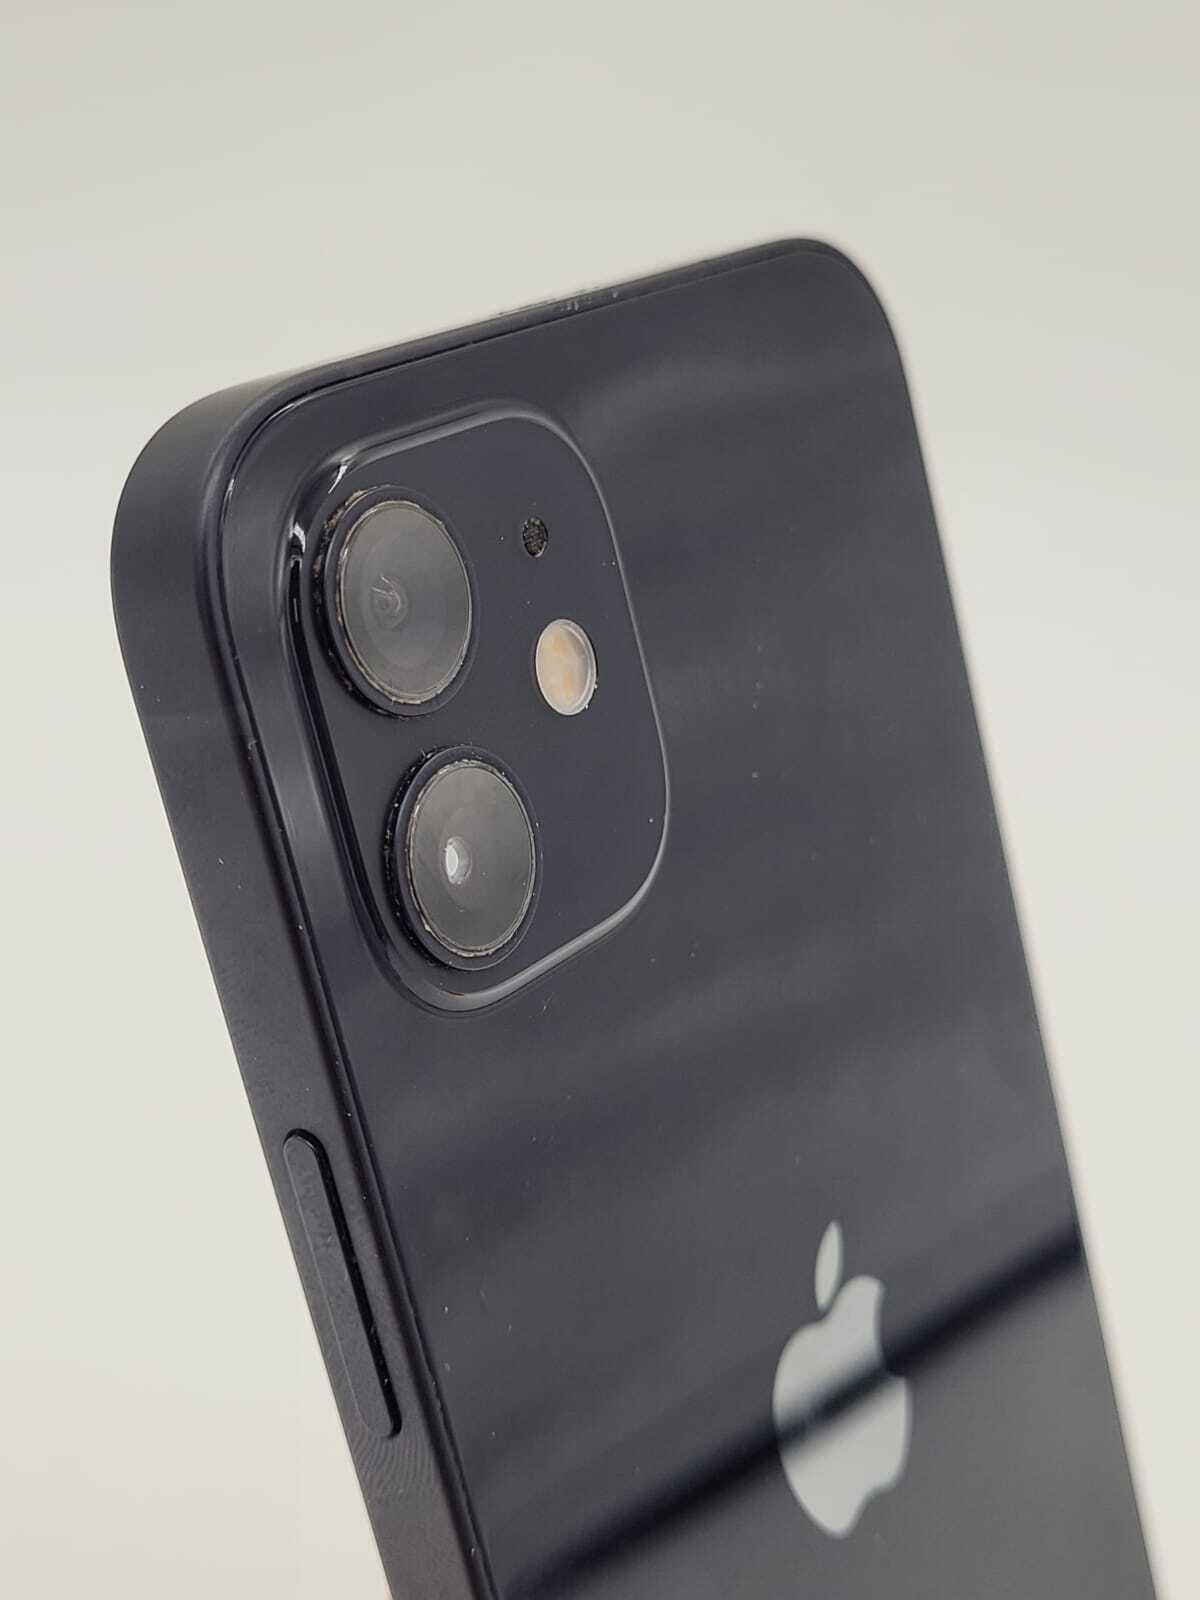 Apple iPhone 12 128GB Black - Unlocked (Pre-owned)